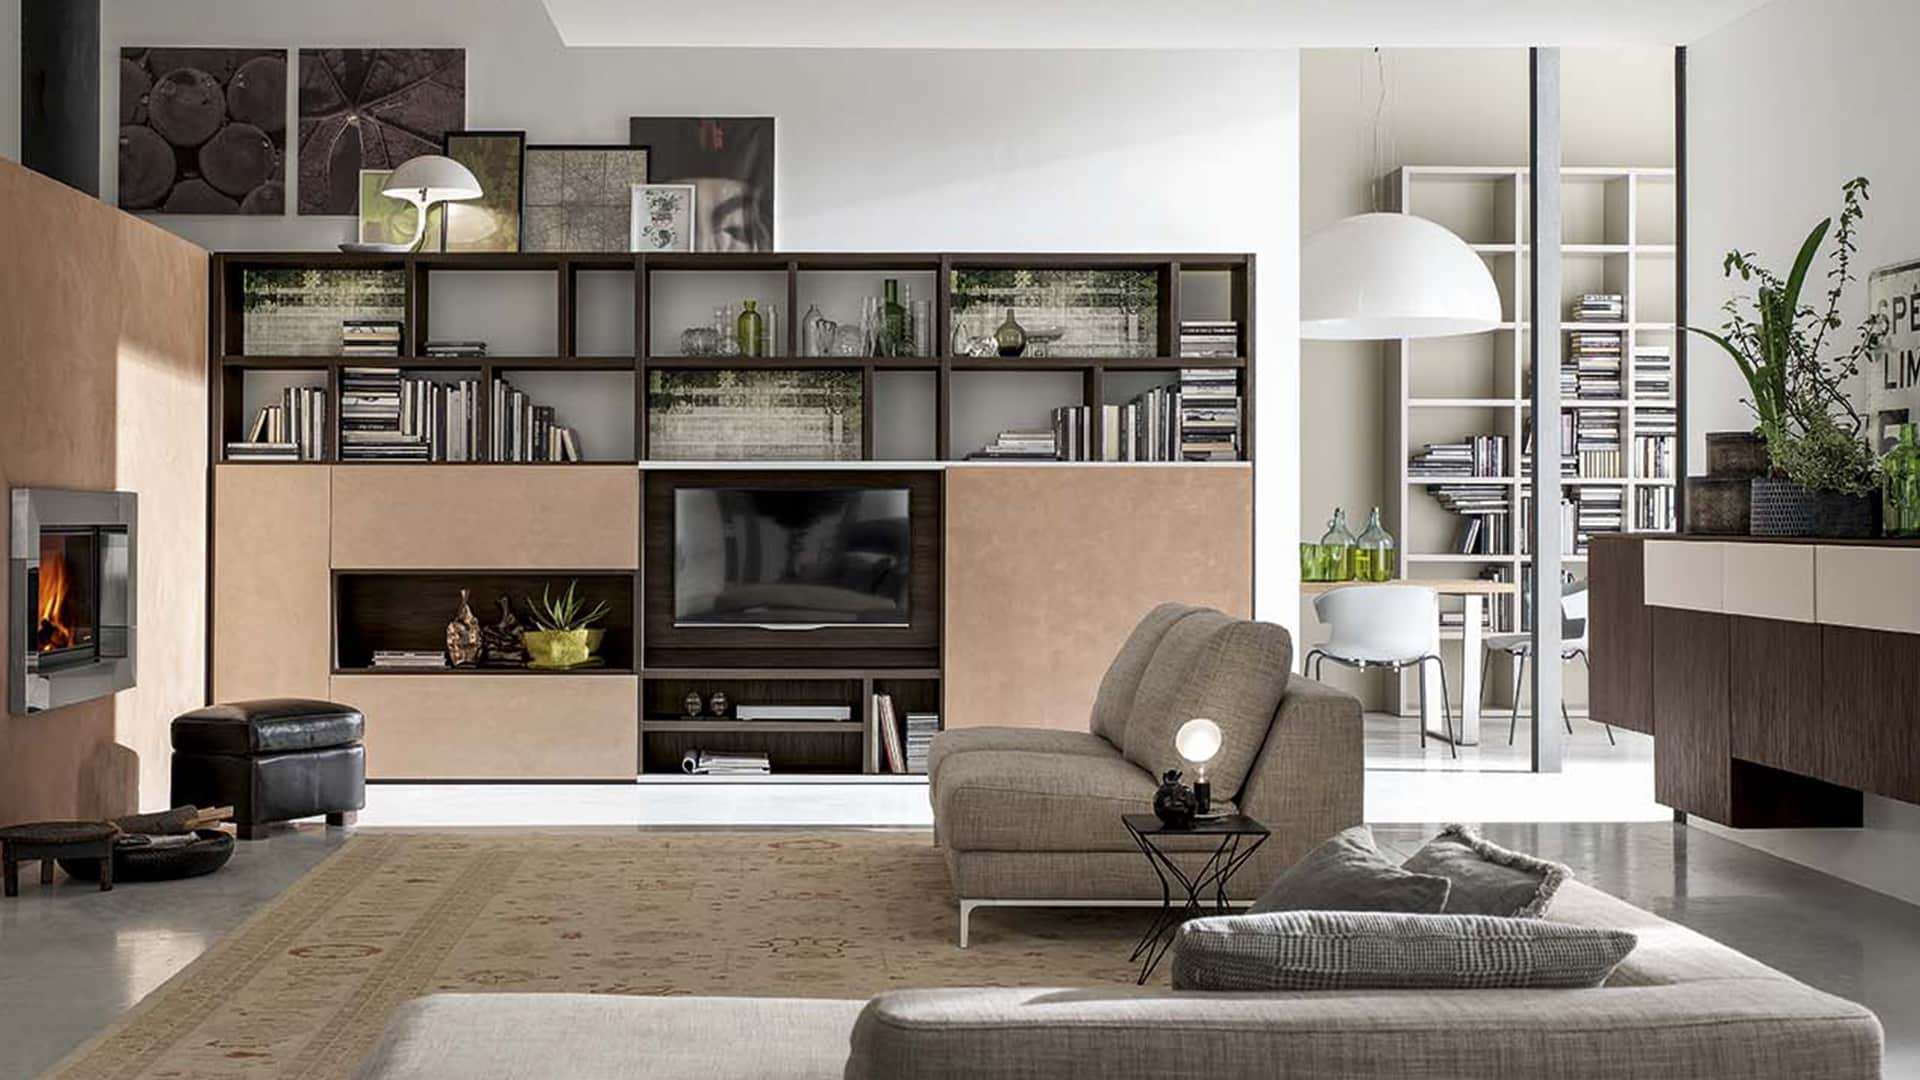 Vendita di mobili per soggiorno a padova mobili da for Soggiorni moderni ad angolo